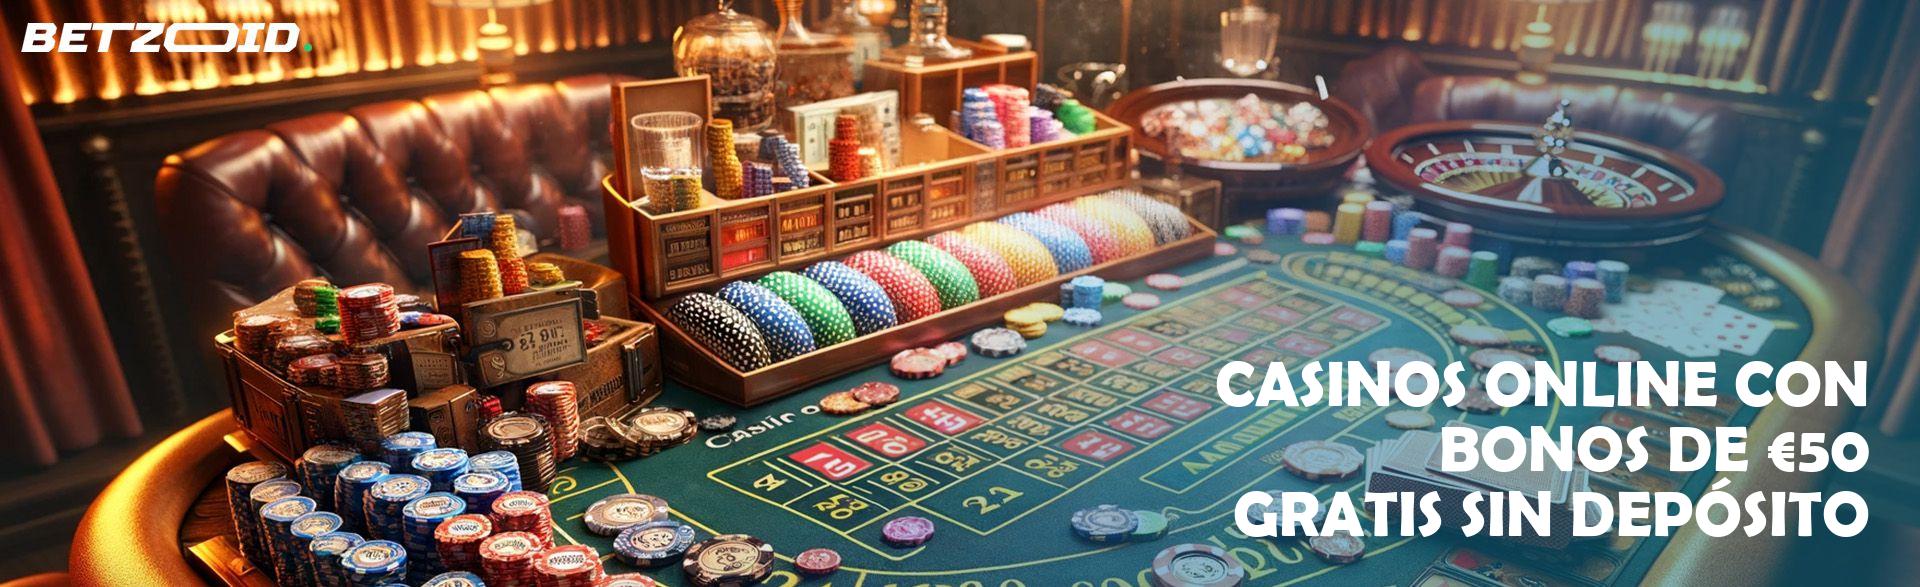 Casinos Online con Bonos De €50 Gratis sin Depósito.